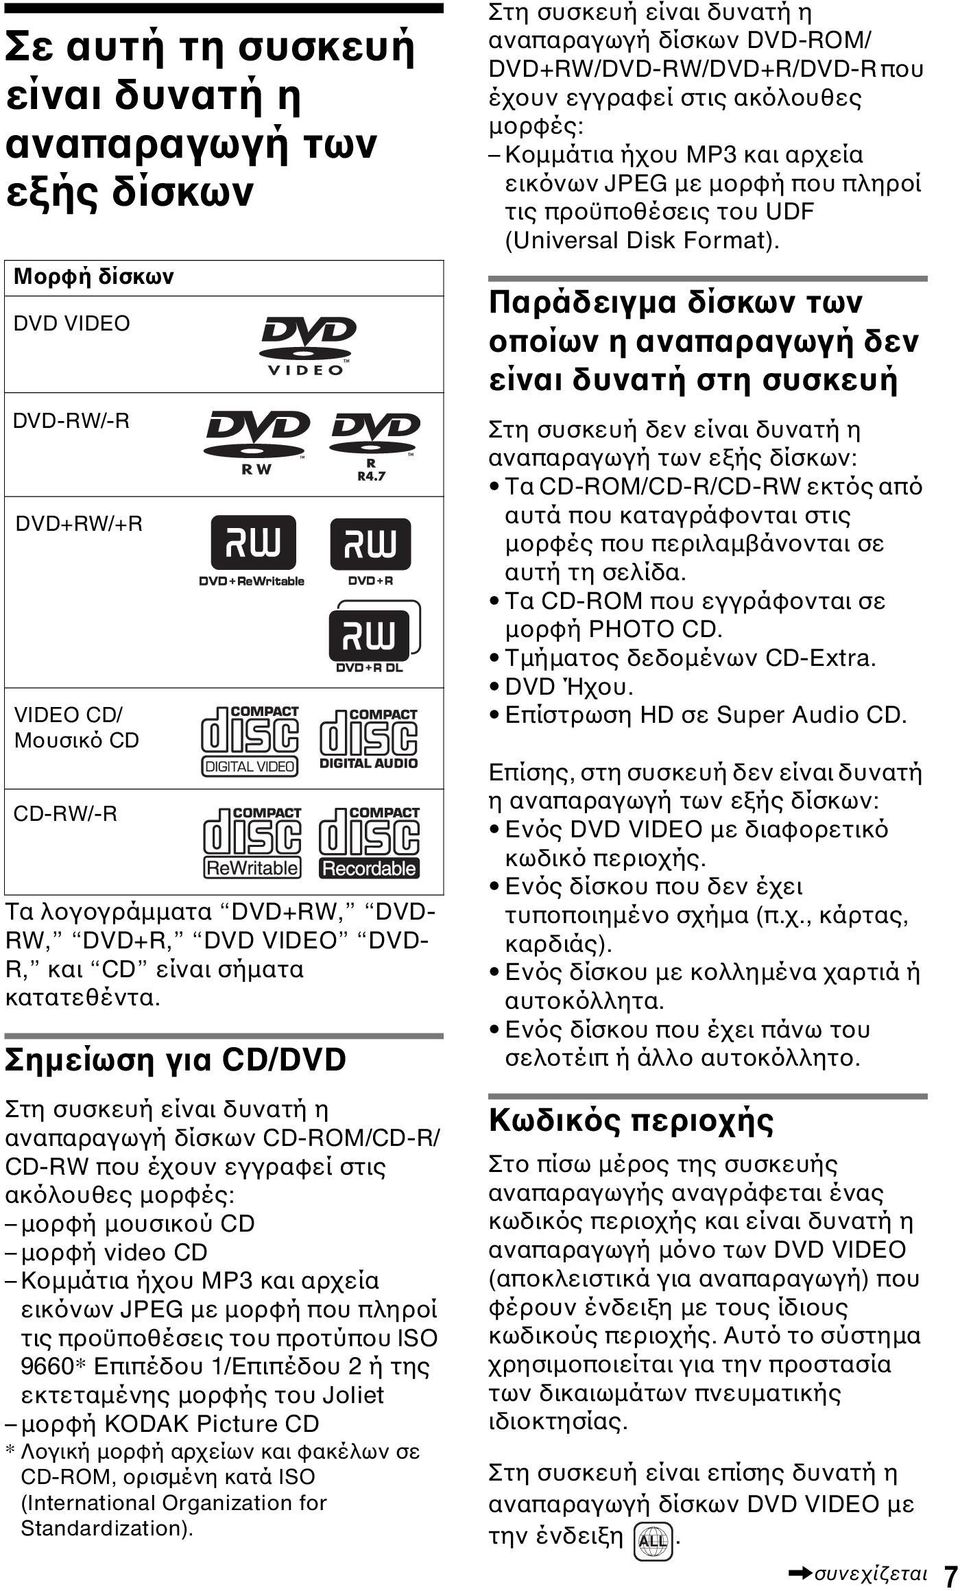 Σηµείωση για CD/DVD Στη συσκευή είναι δυνατή η αναπαραγωγή δίσκων CD-ROM/CD-R/ CD-RW που έχουν εγγραφεί στις ακόλουθες µορφές: µορφή µουσικού CD µορφή video CD Kοµµάτια ήχου MP3 και αρχεία εικόνων